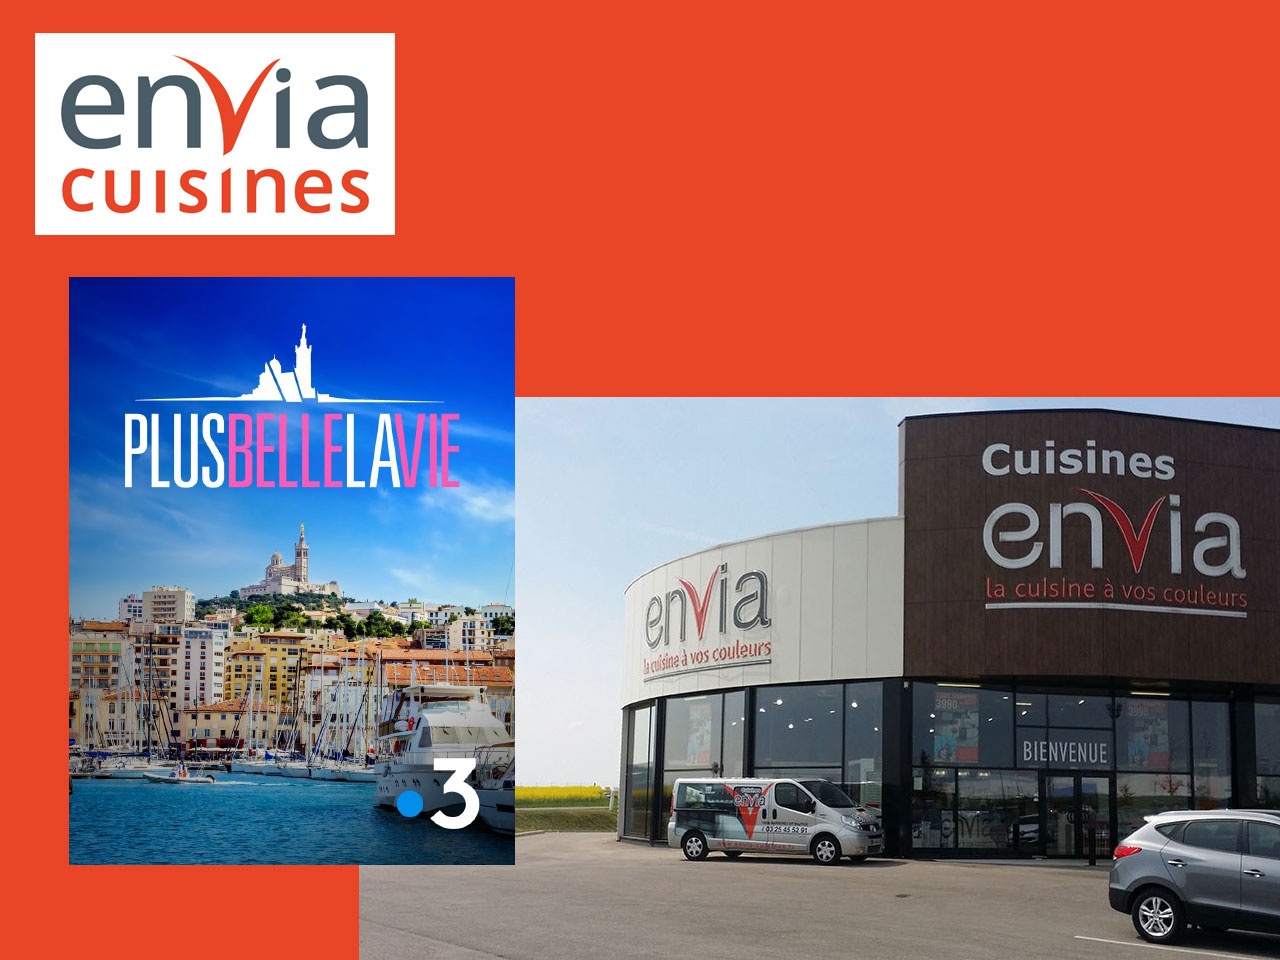 Envia Cuisines lance une campagne télé en partenariat avec « Plus belle la vie » sur France 3 TV